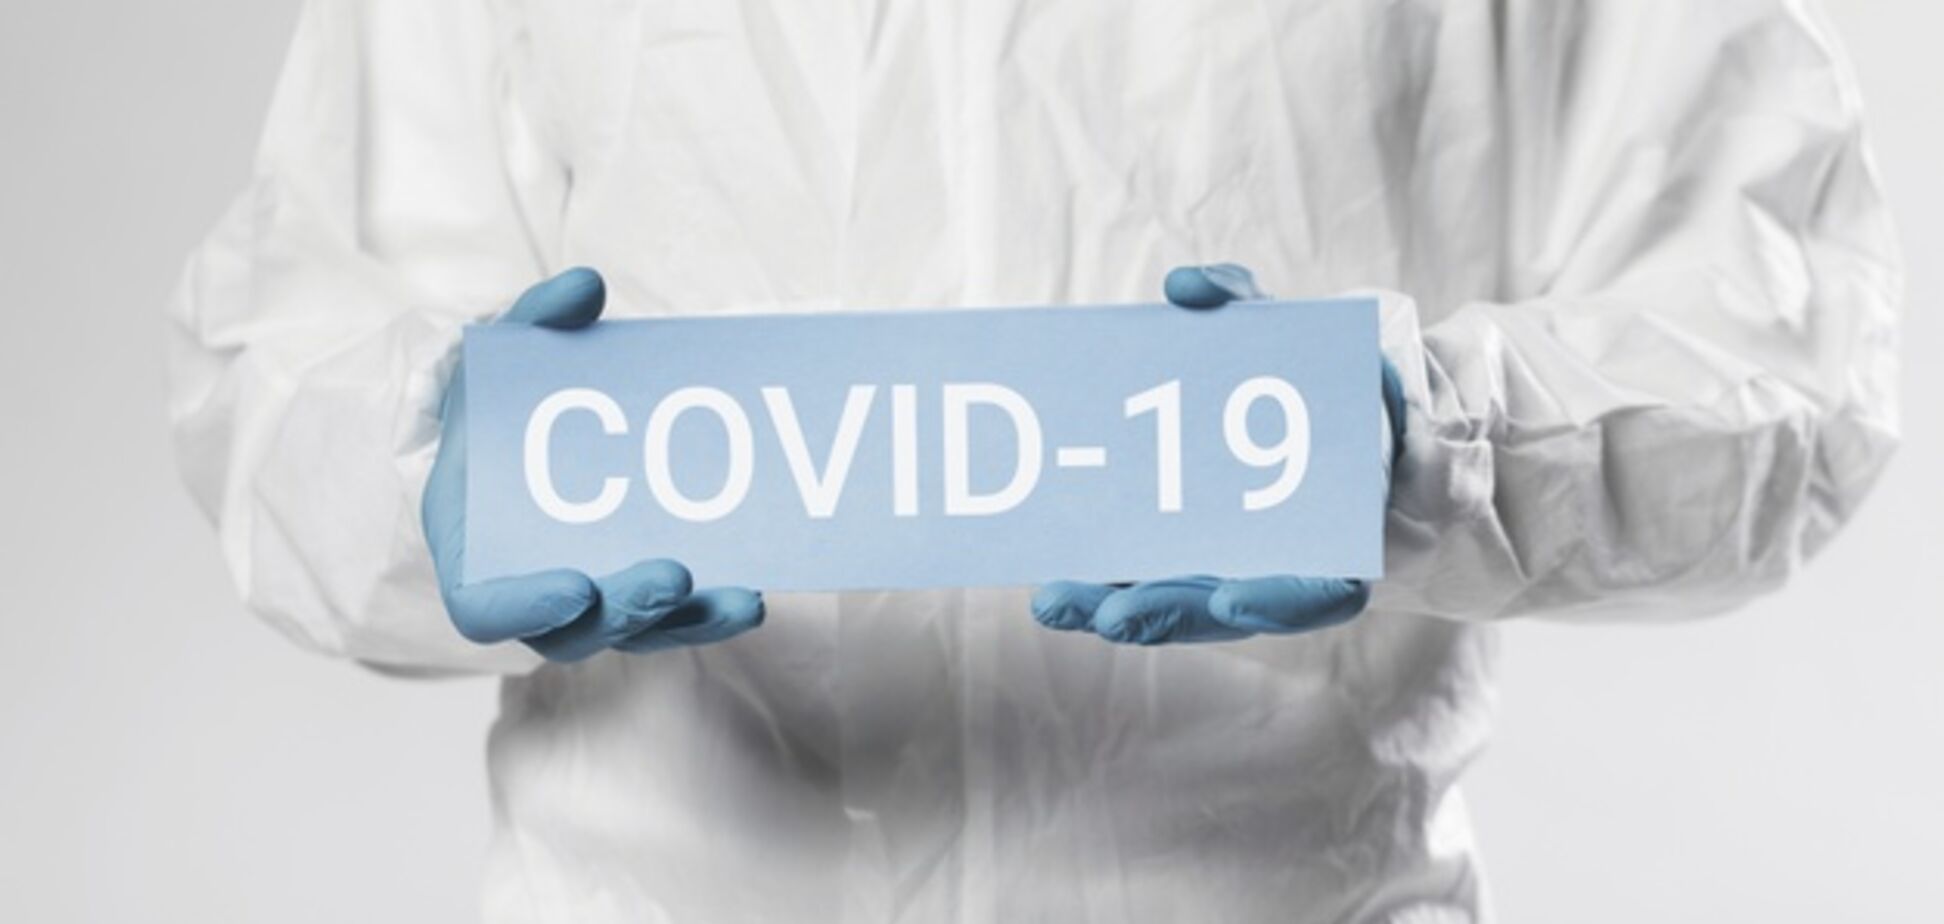 Институт эпидемиологии включил Протефлазид в протокол лечения Сovid-19 в своей клинике